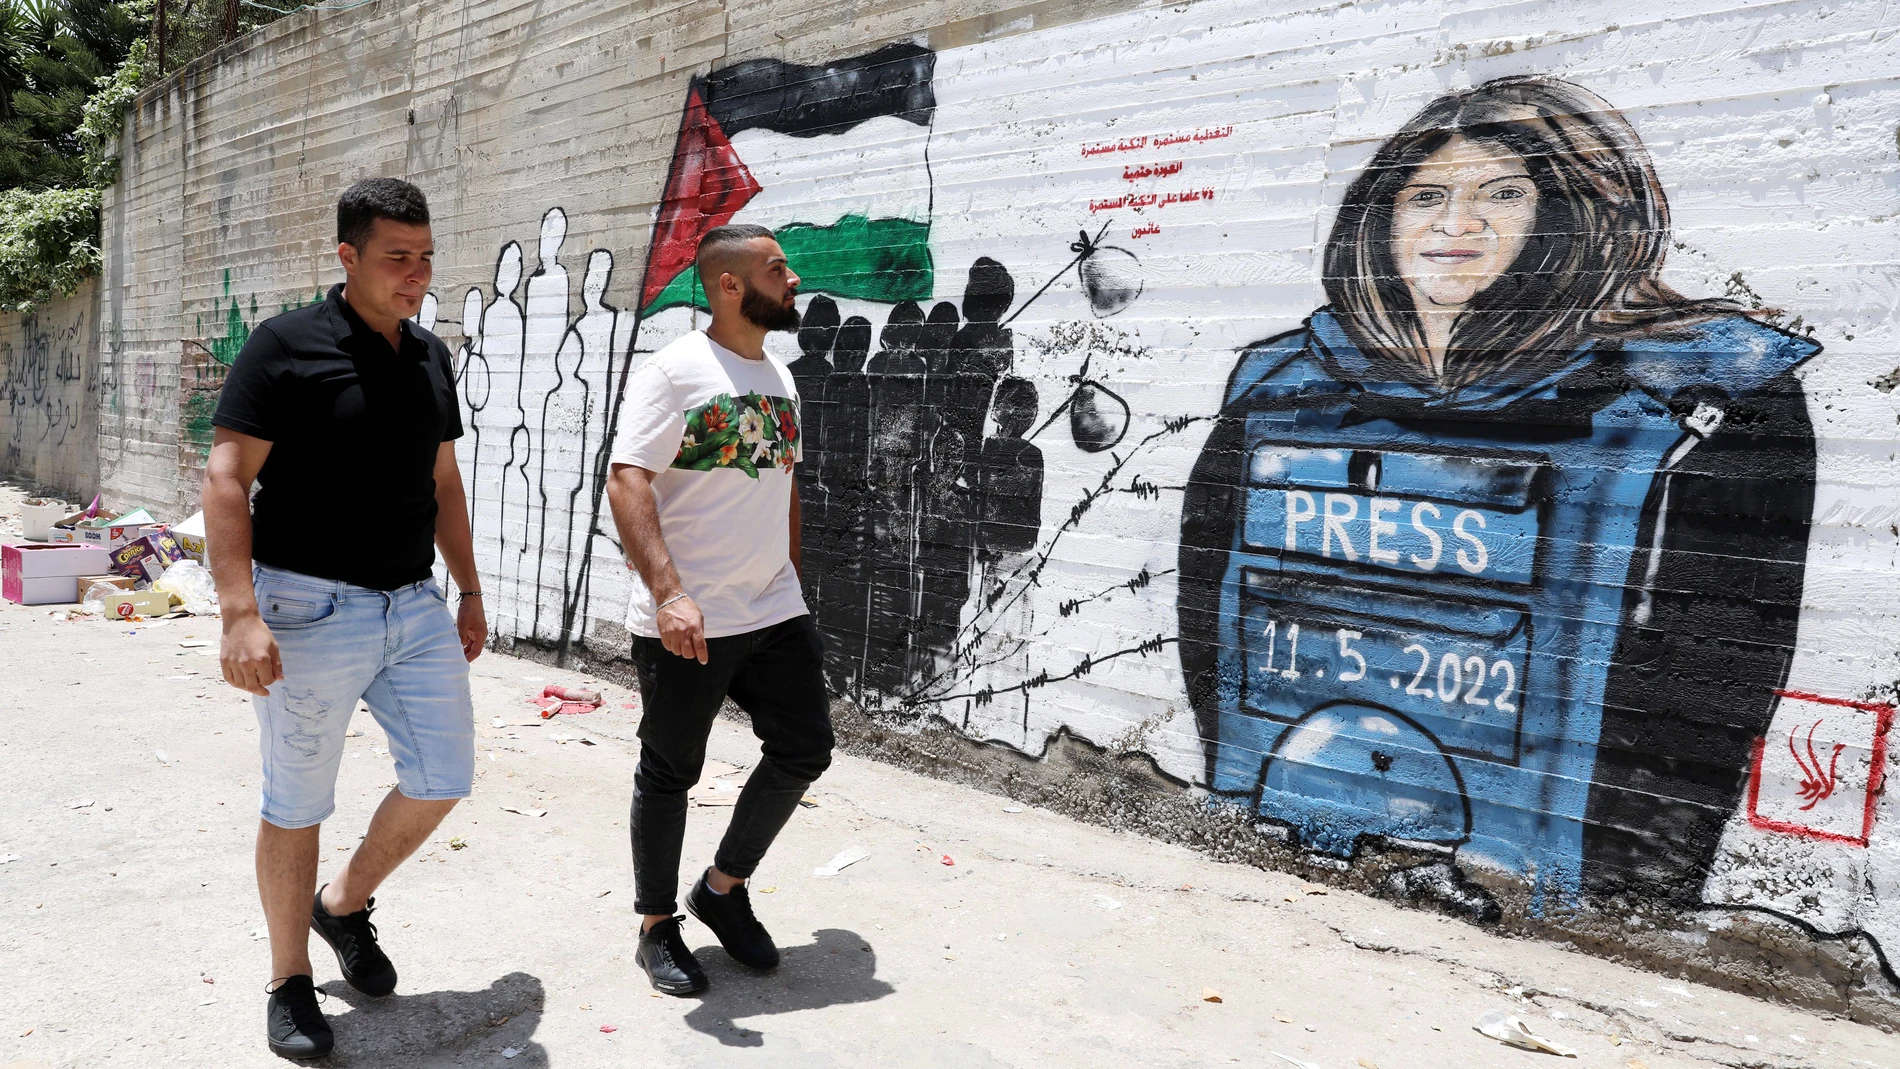 Dos palestinos caminan frente a un mural de la periodista Shireen Abu Akleh